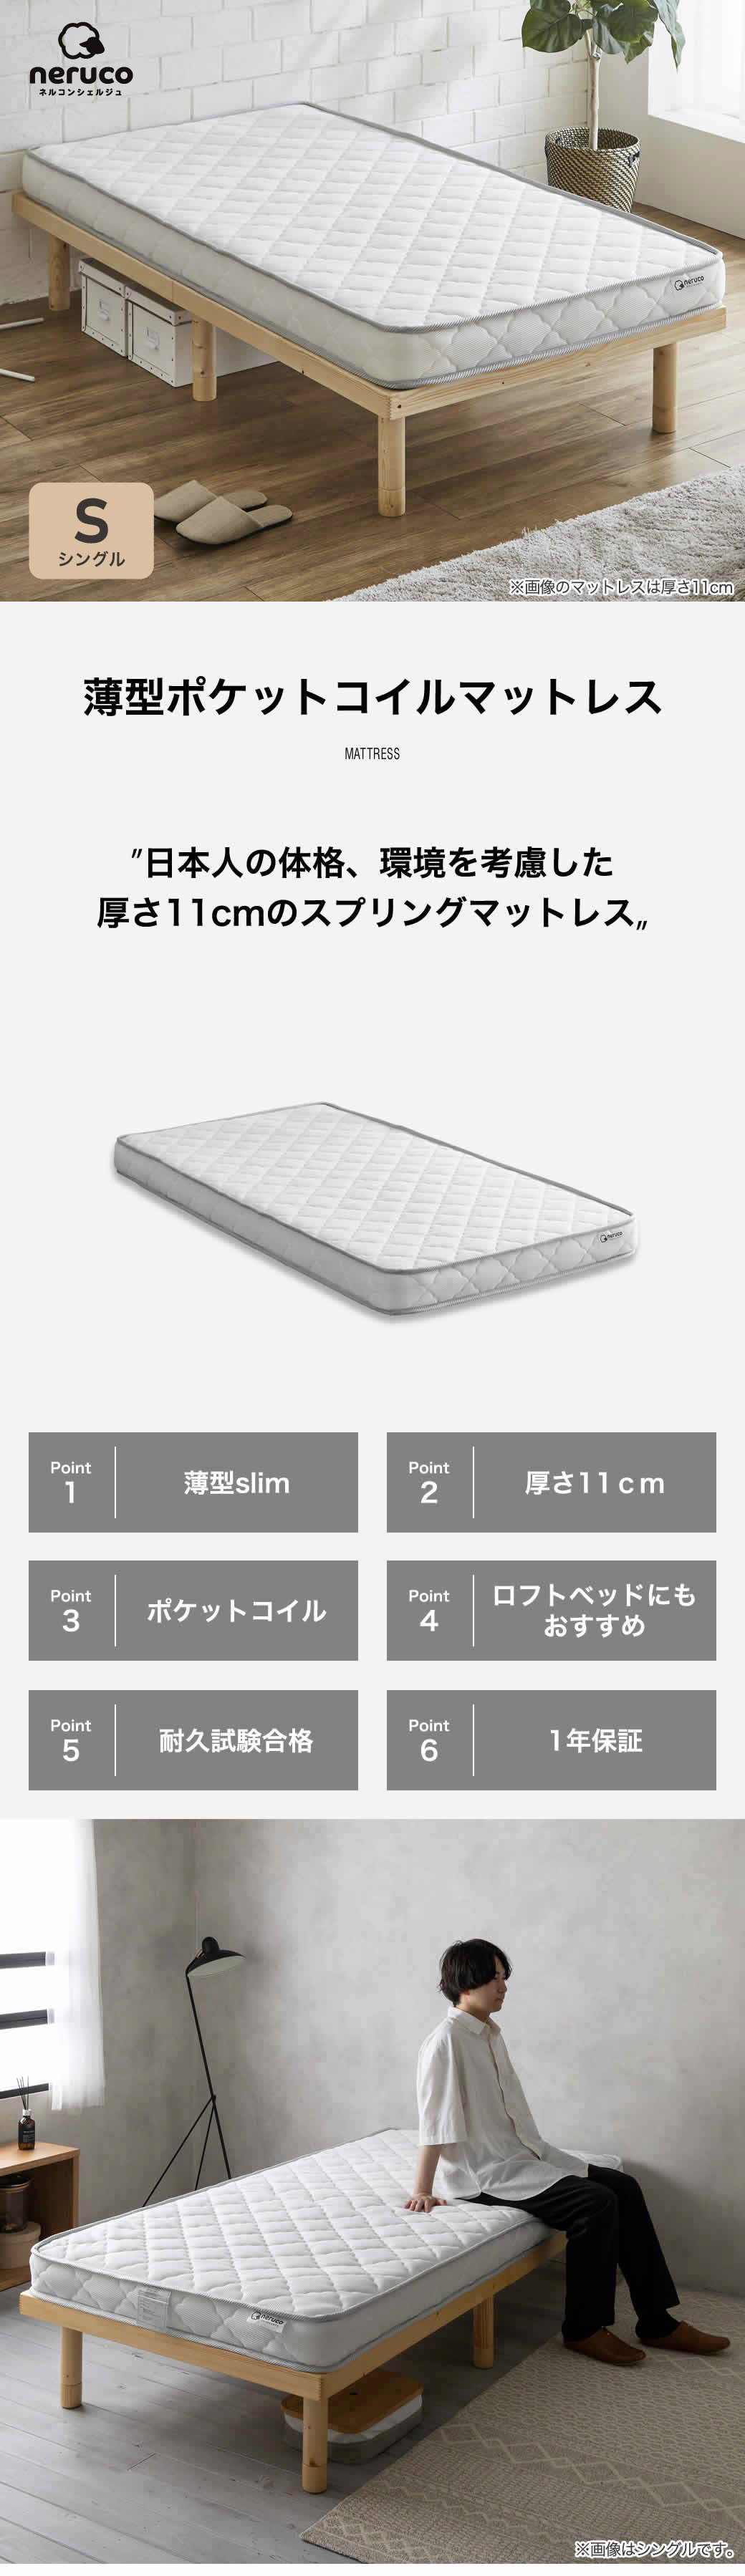 薄型ポケットコイルマットレス シングル日本人の体格、環境を考慮した厚さ11cmのスプリングマットレス